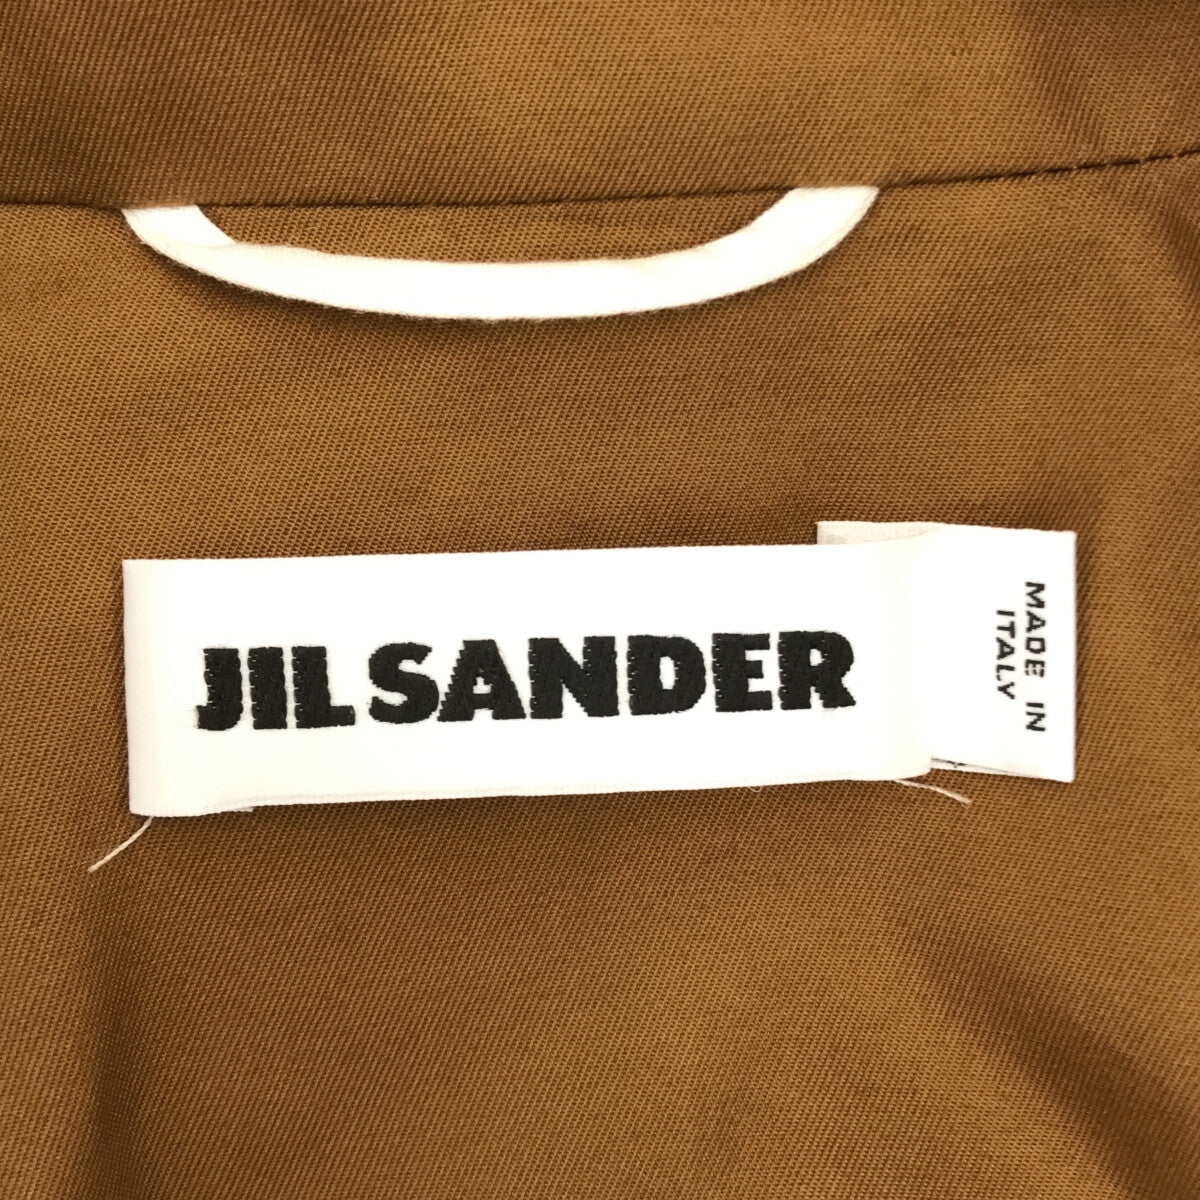 JIL SANDER / ジルサンダー | アシンメトリー サイドプリーツ トレンチコート | 36 | ブラウン | レディース